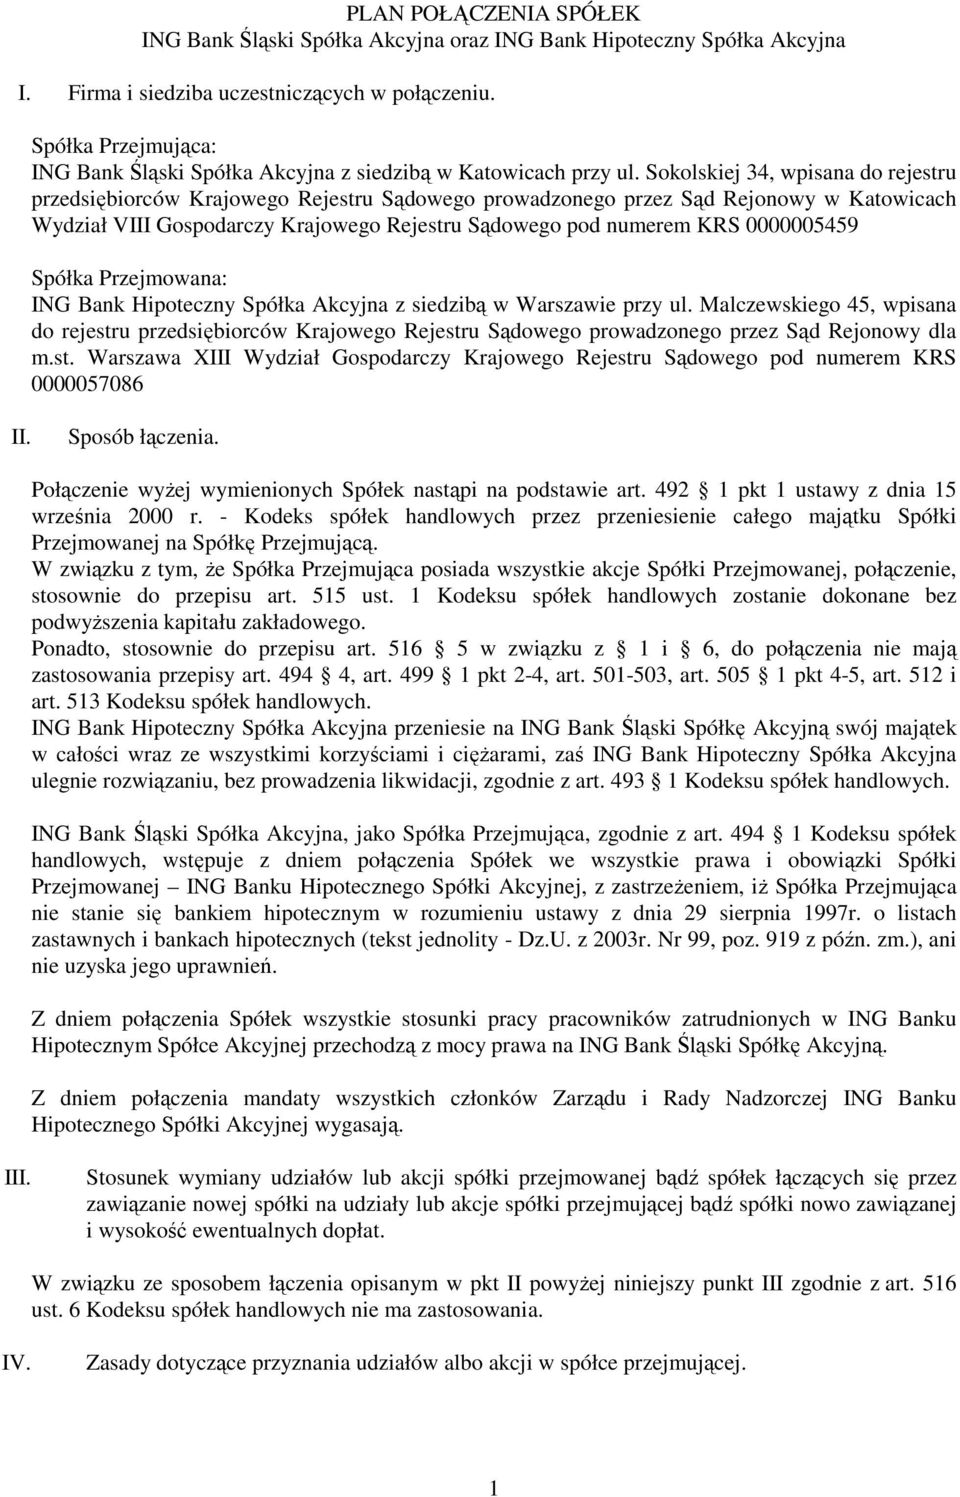 Sokolskiej 34, wpisana do rejestru przedsiębiorców Krajowego Rejestru Sądowego prowadzonego przez Sąd Rejonowy w Katowicach Wydział VIII Gospodarczy Krajowego Rejestru Sądowego pod numerem KRS